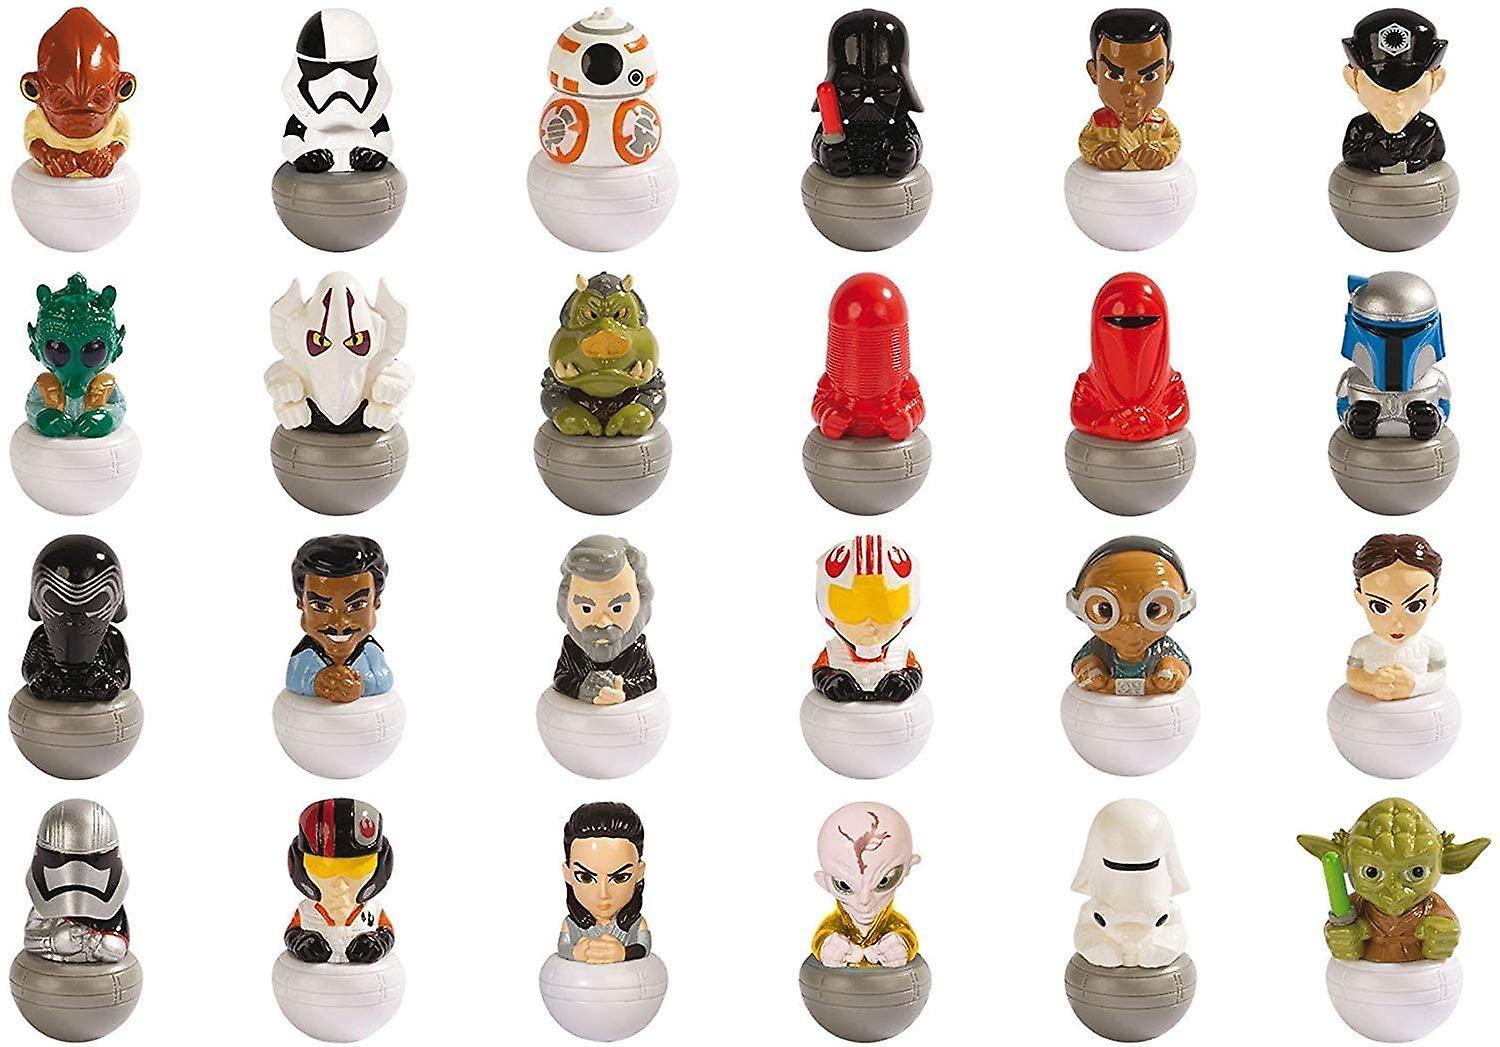 18-Pack Disney Star Wars Rollinz 2.0 Figures Collectible Figures